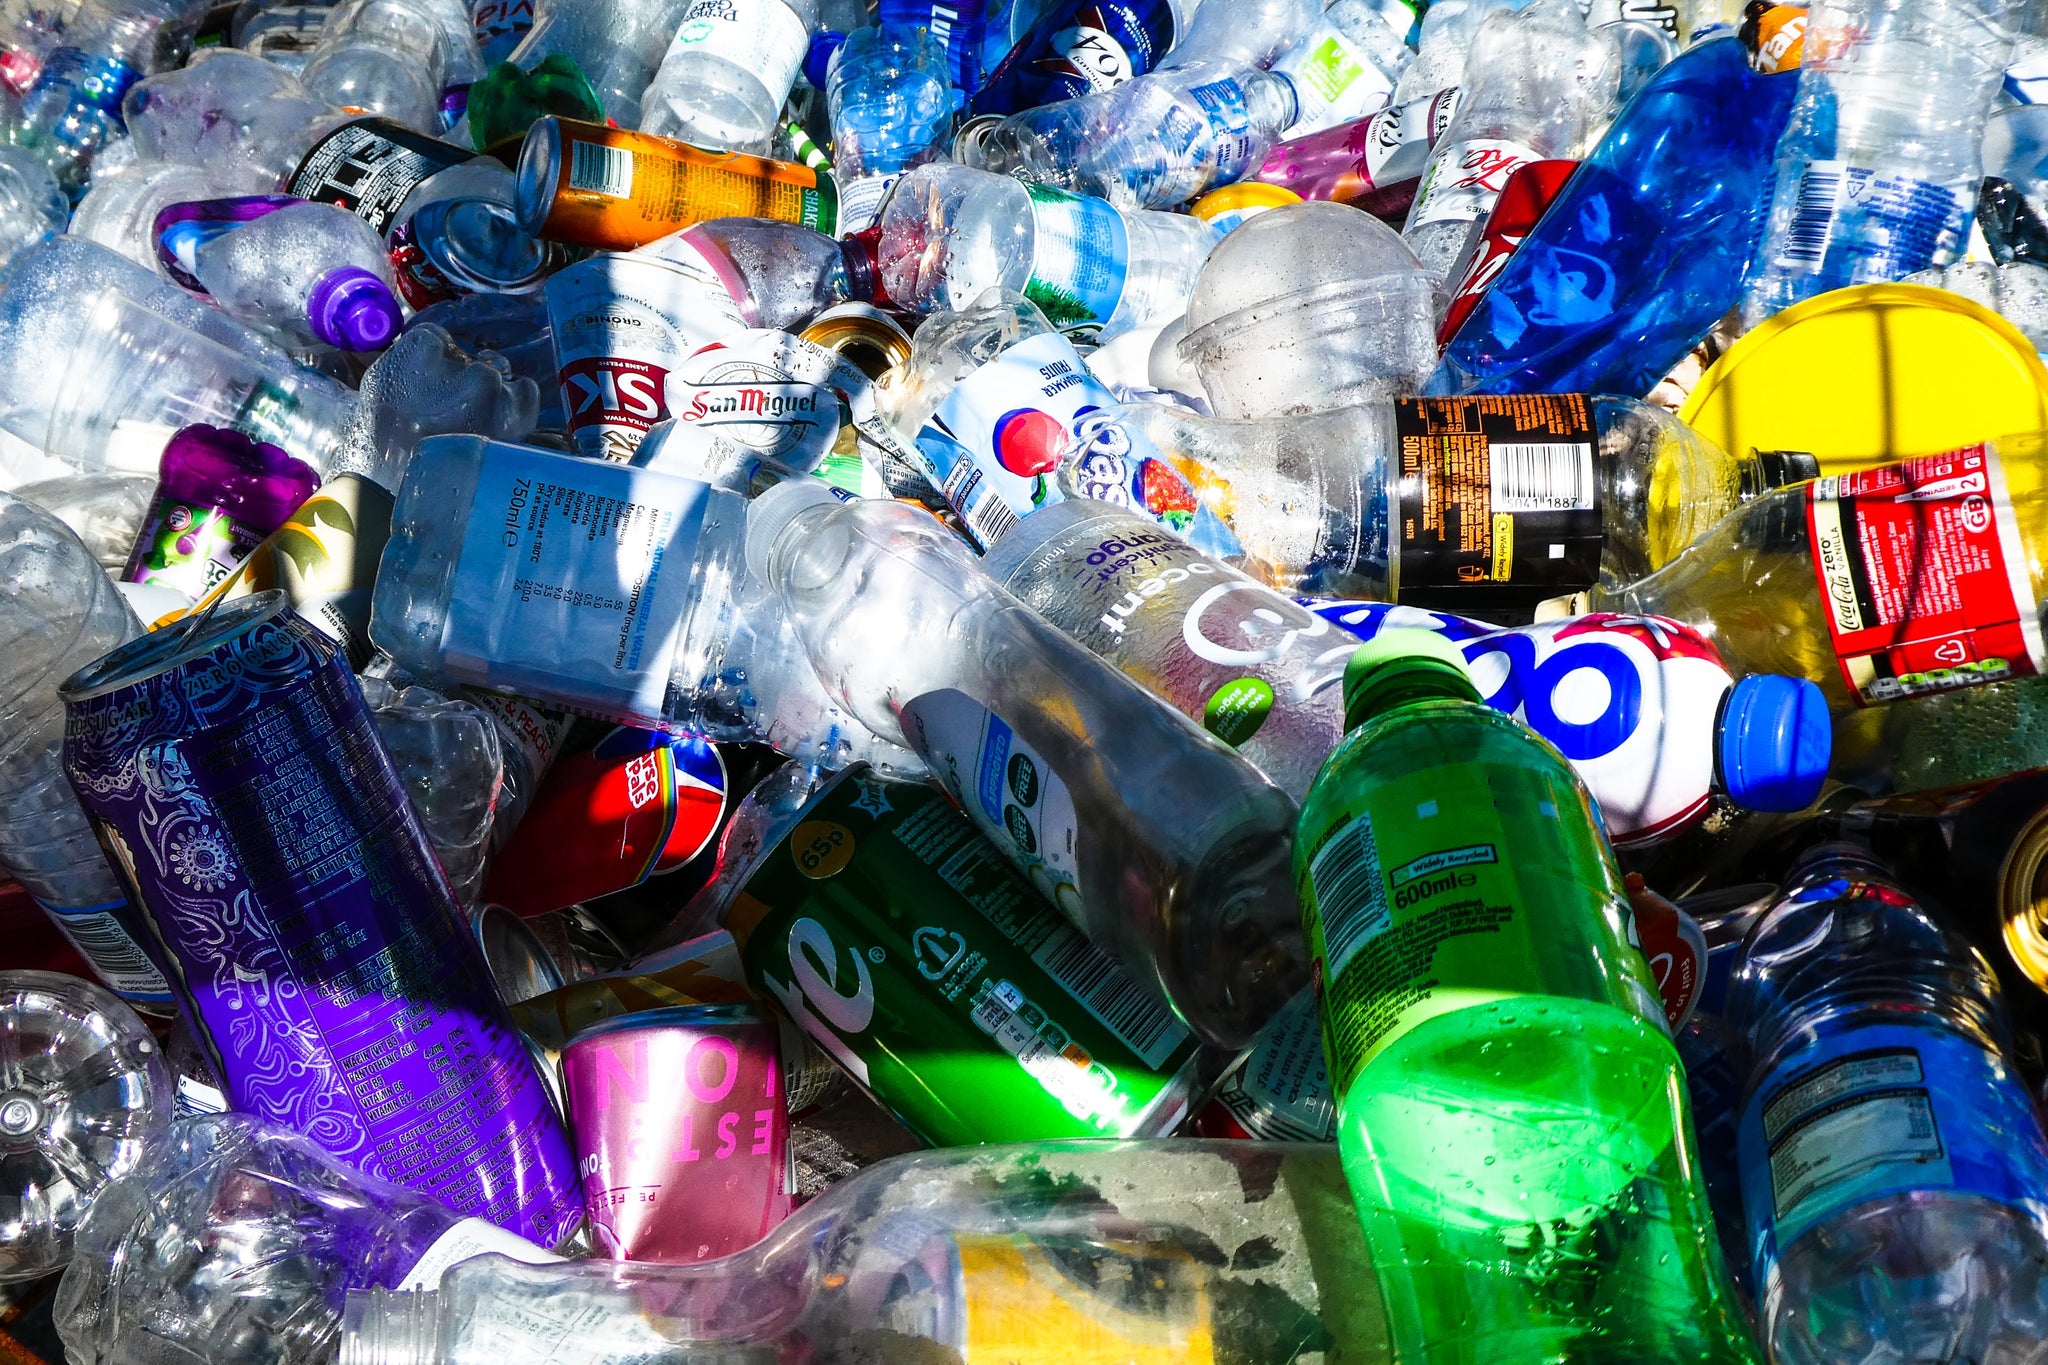 Como é que reciclo correctamente os plásticos?